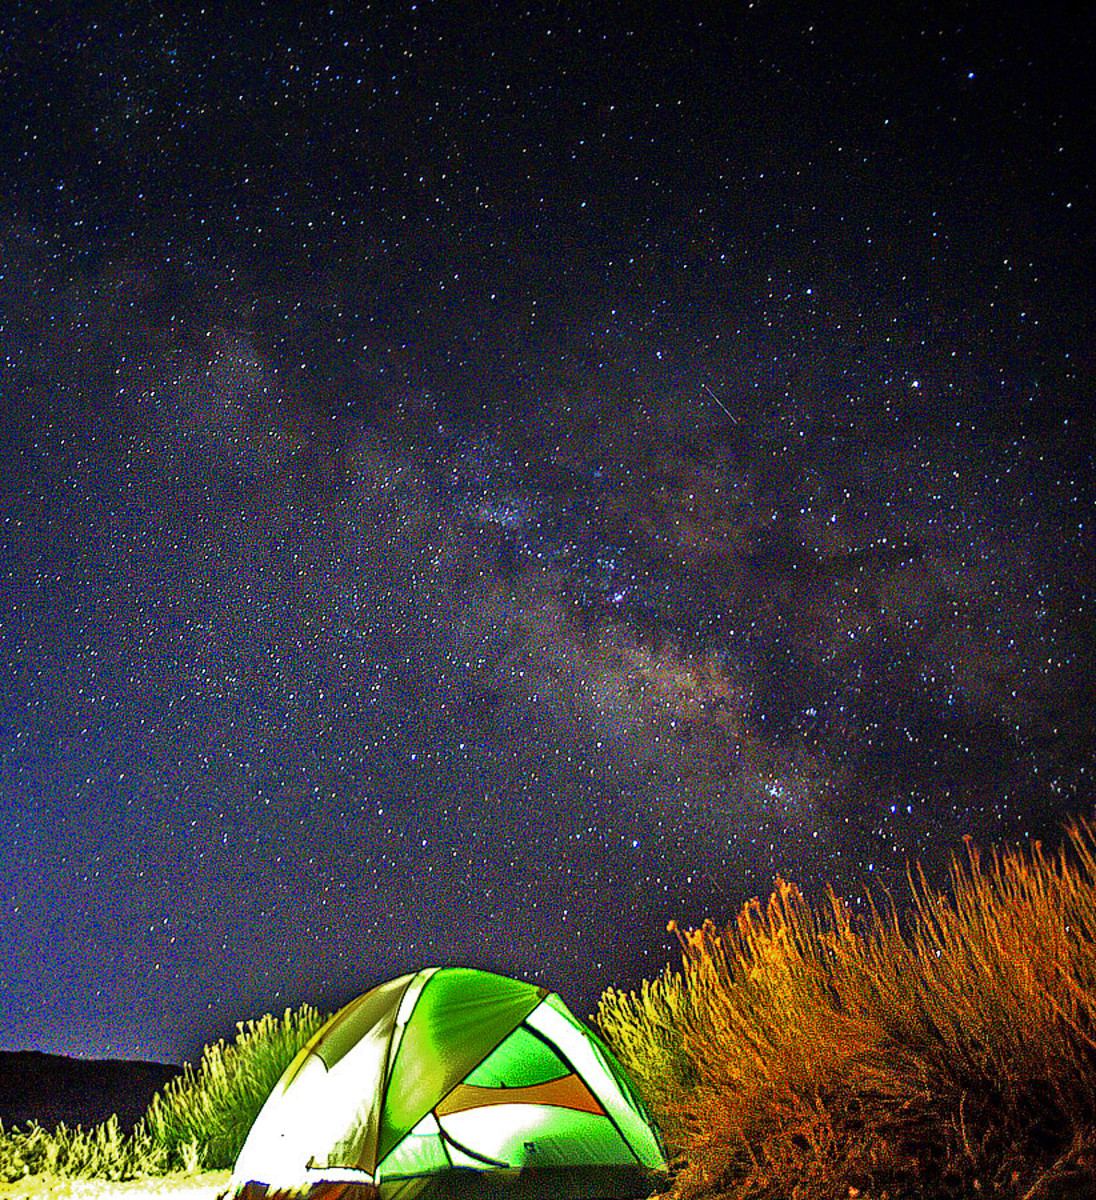 Camping under sparkling night sky.